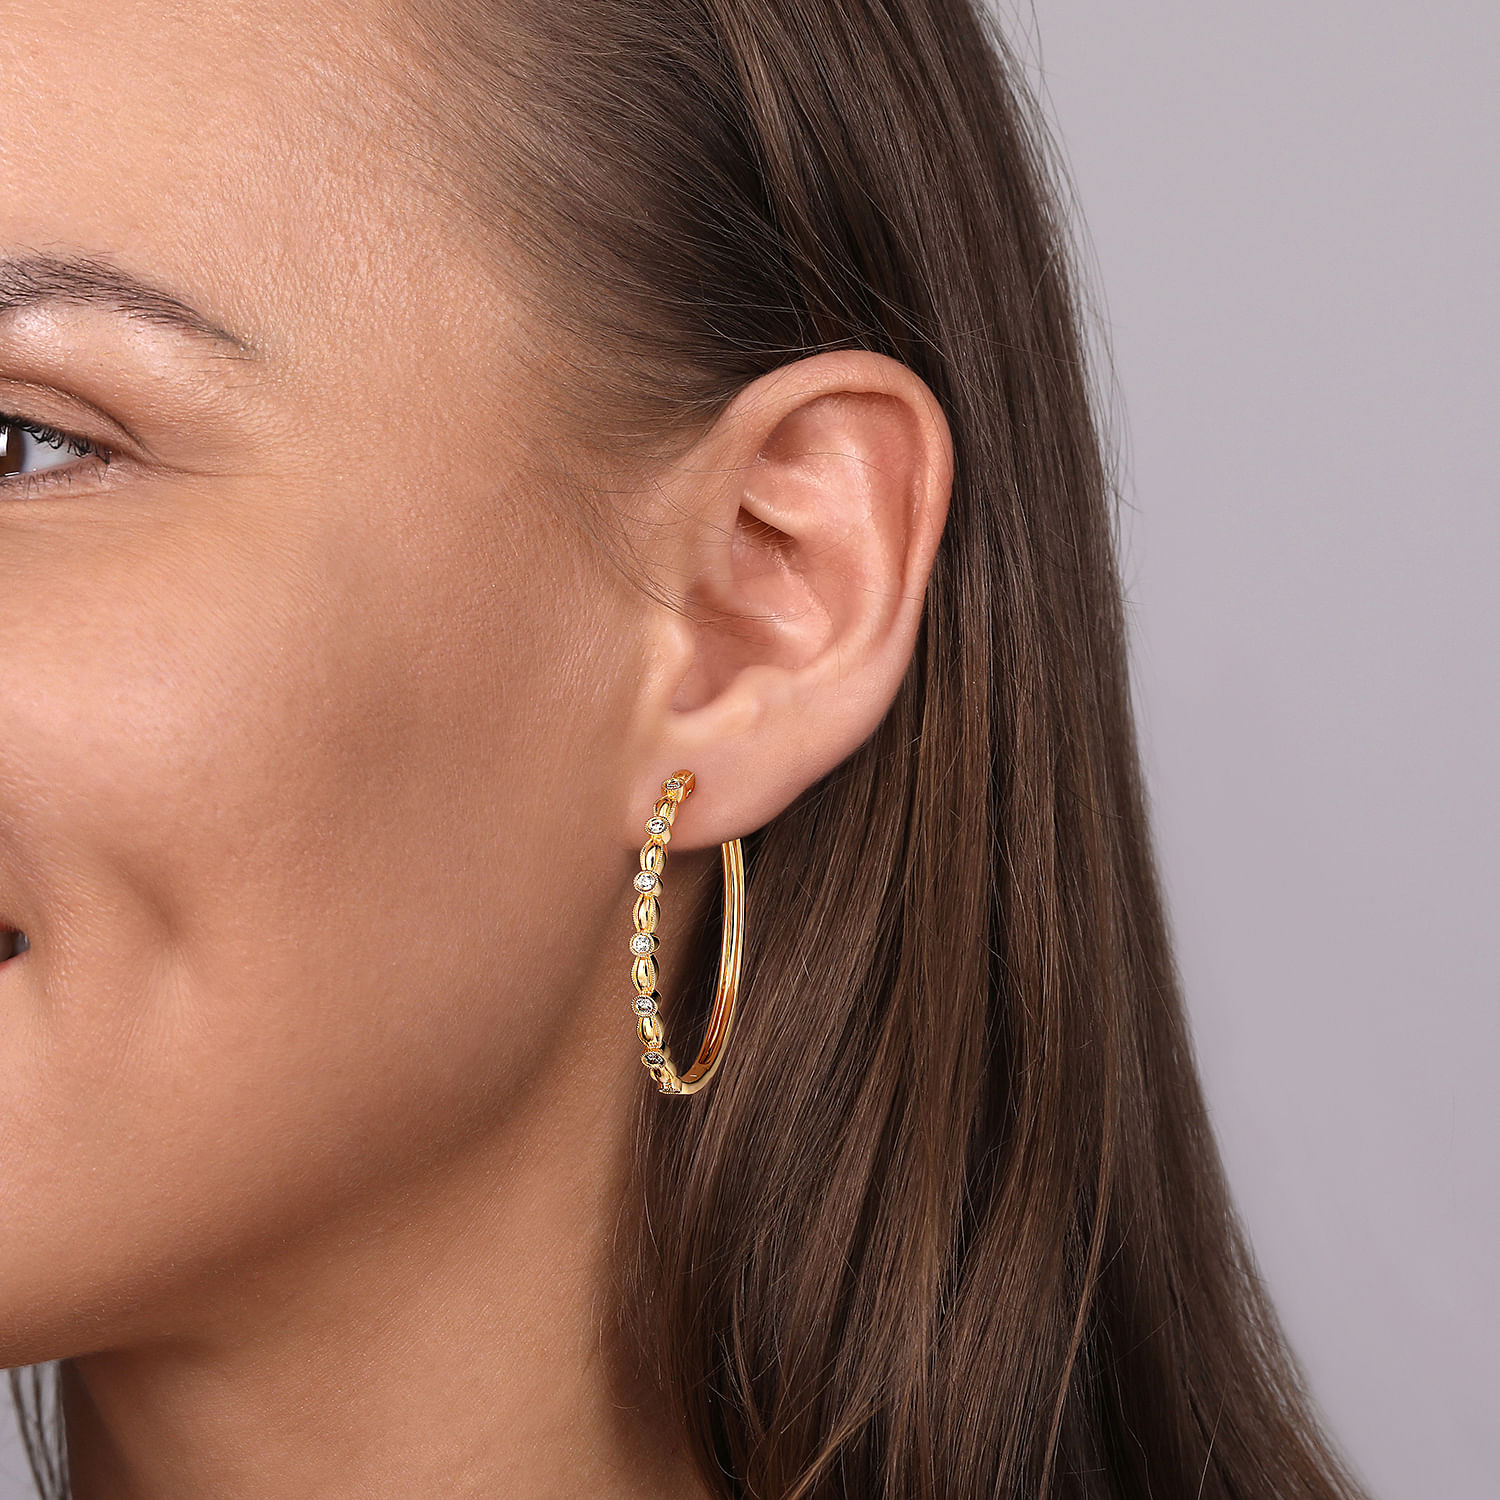 14K Yellow Gold Diamond Hoop Earrings in size 40mm